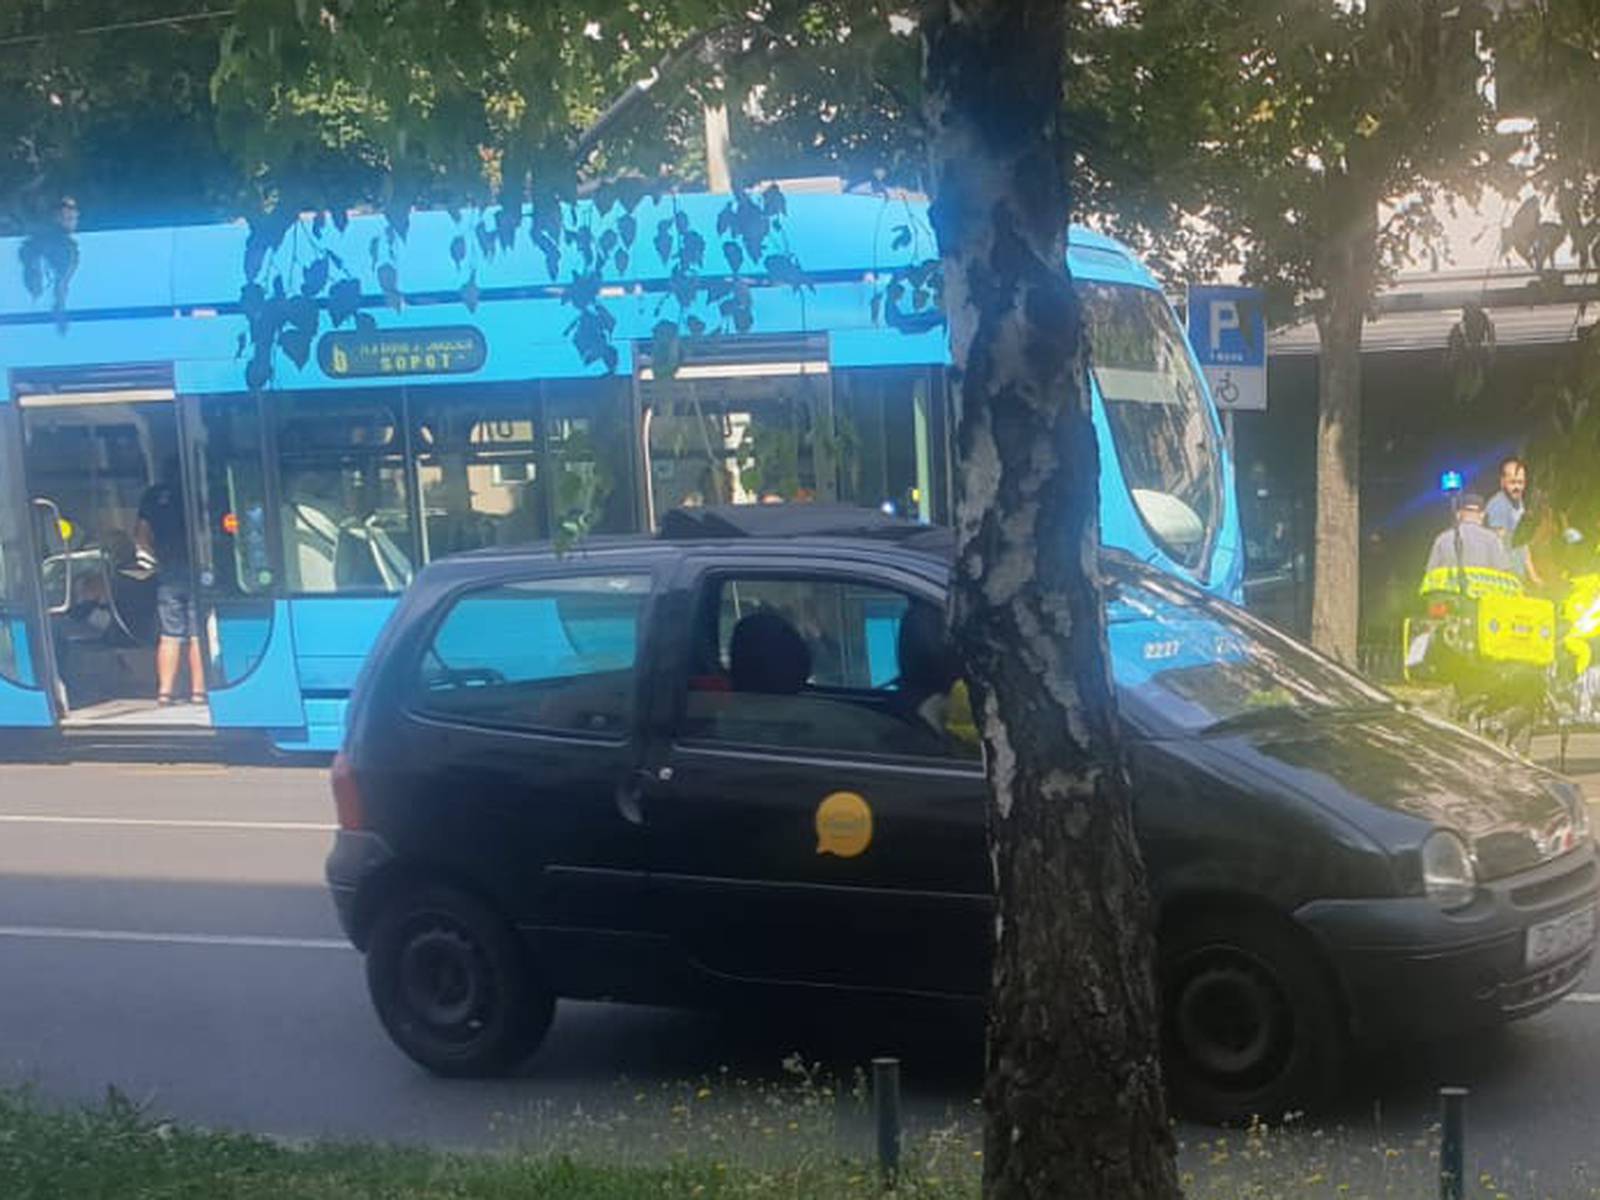 Nesreća u Zagrebu: Sudarili se taxi i tramvaj, dvoje ozlijeđeno